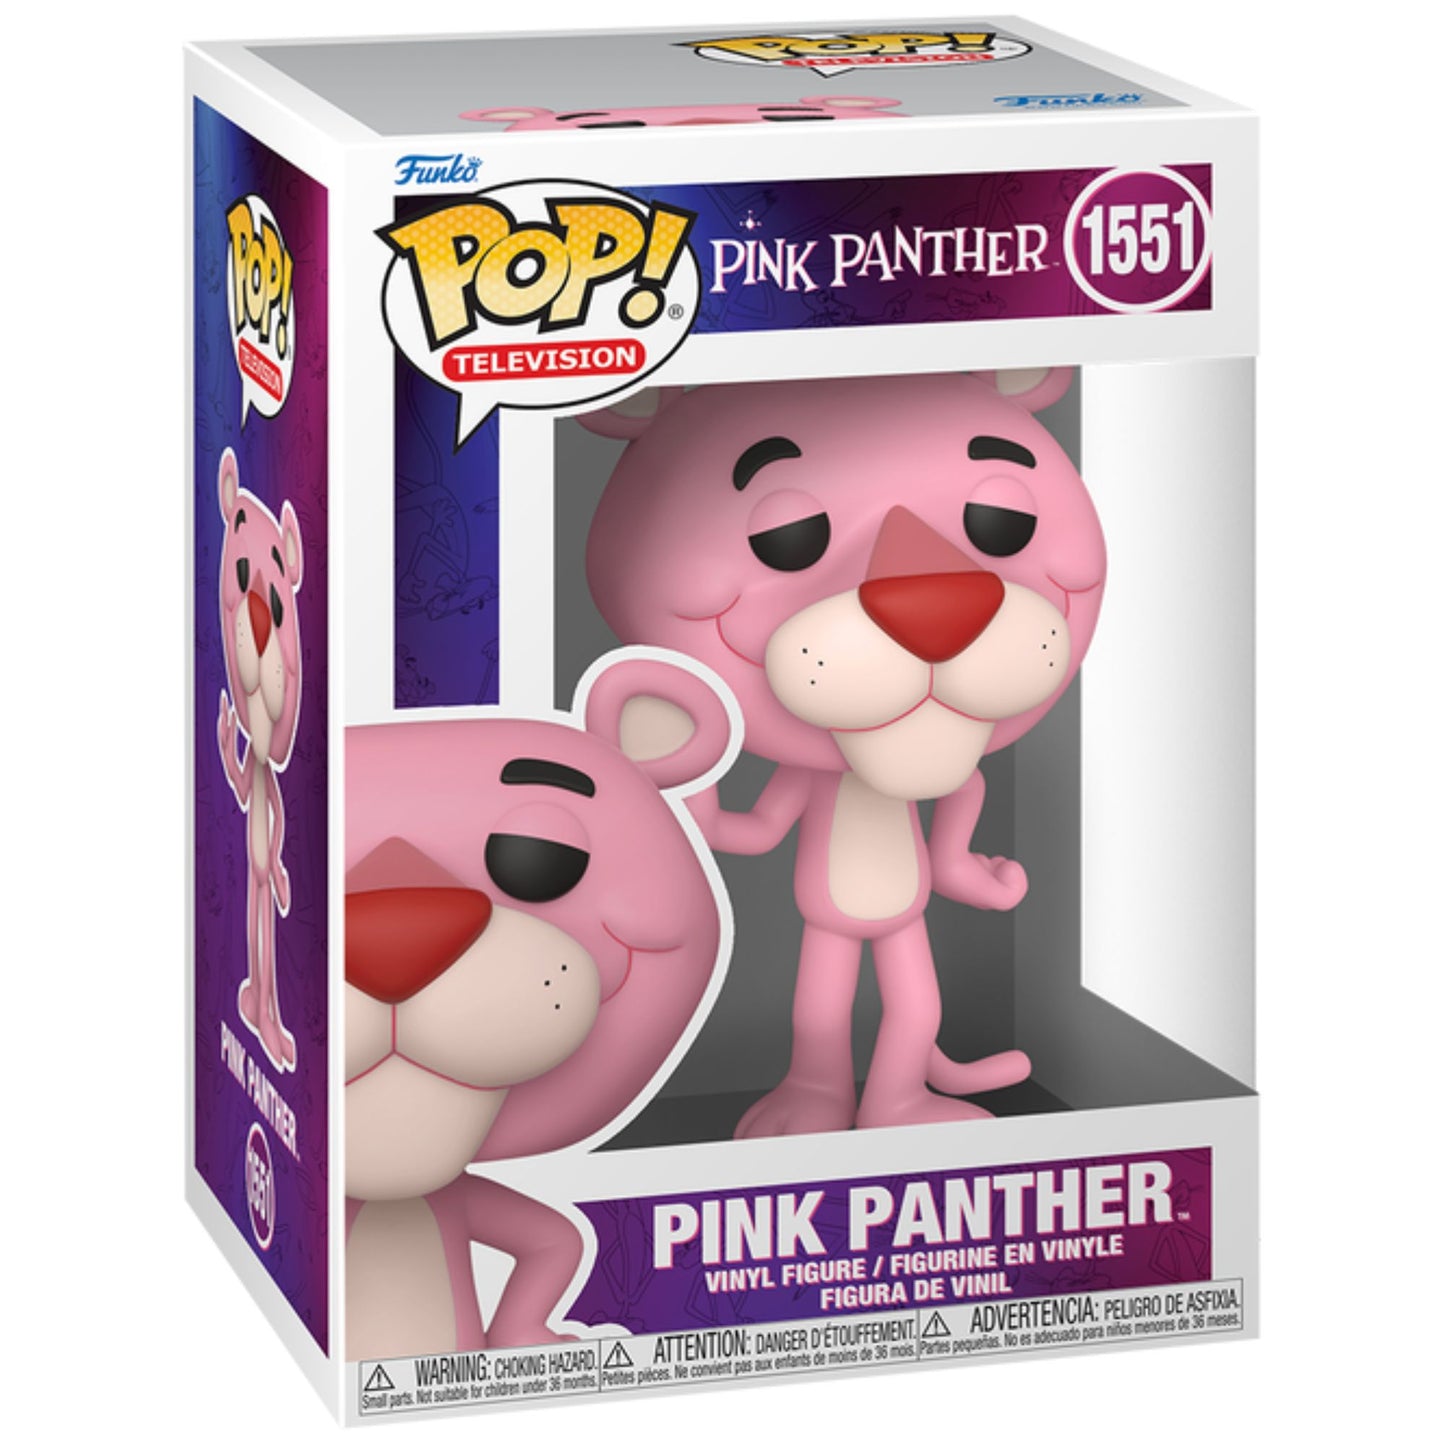 Funko POP Pink Panther 1551 - Pink Panther